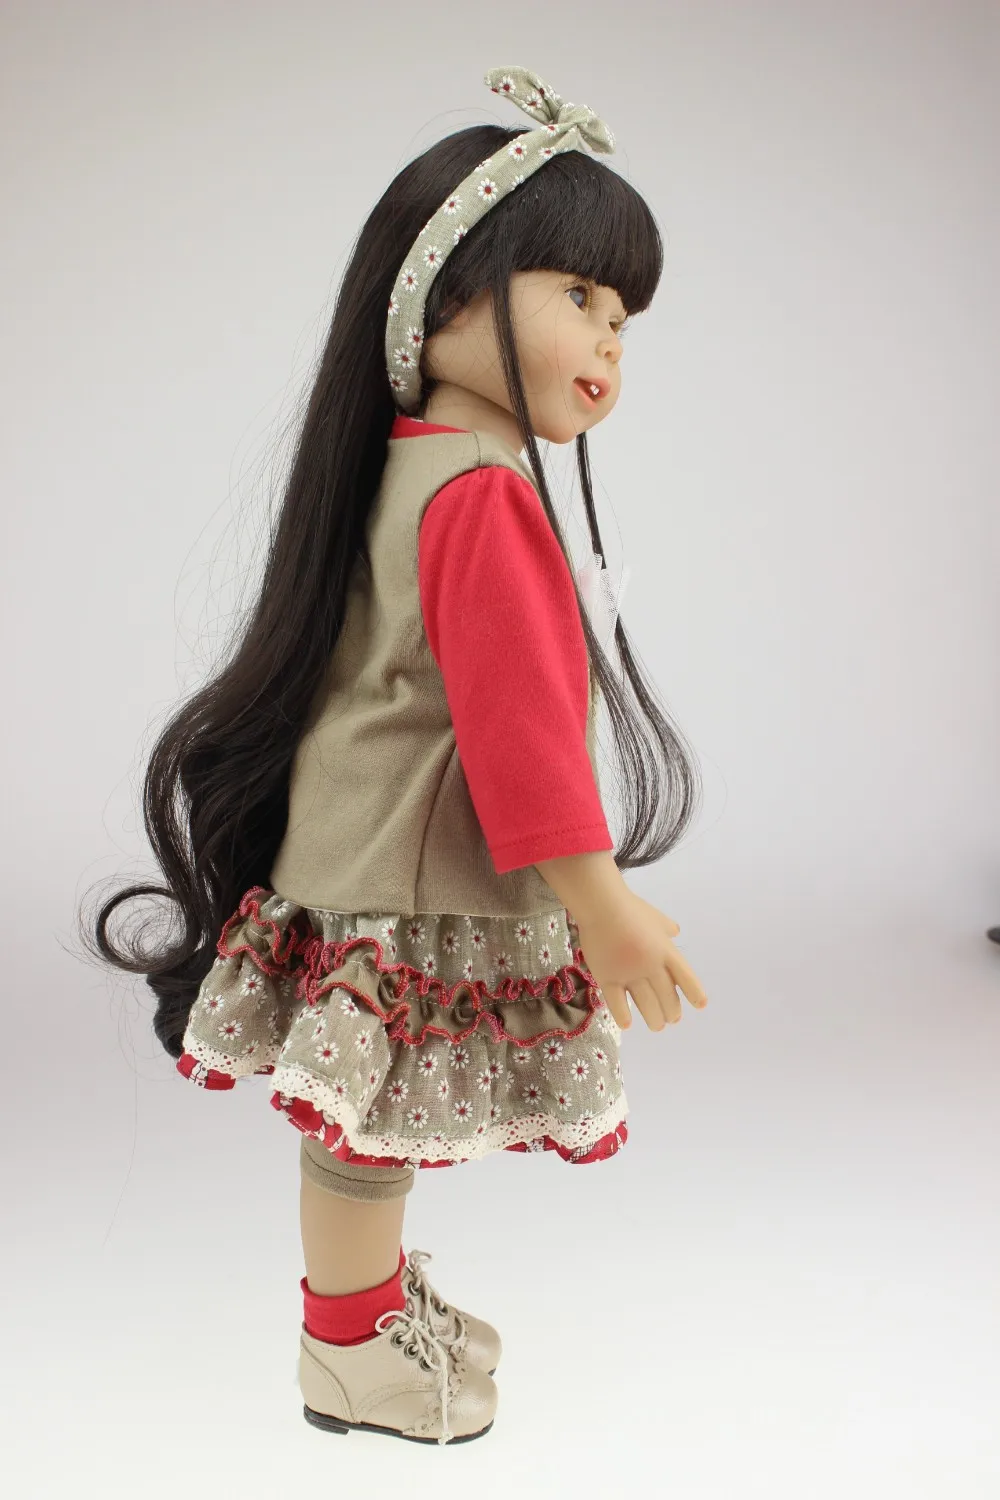 18 дюймов 45 см кукла Мода Полный винил Девушка Bjd Кукла Коллекция SD Реалистичная кукла живые игрушки ручной работы дети принцесса